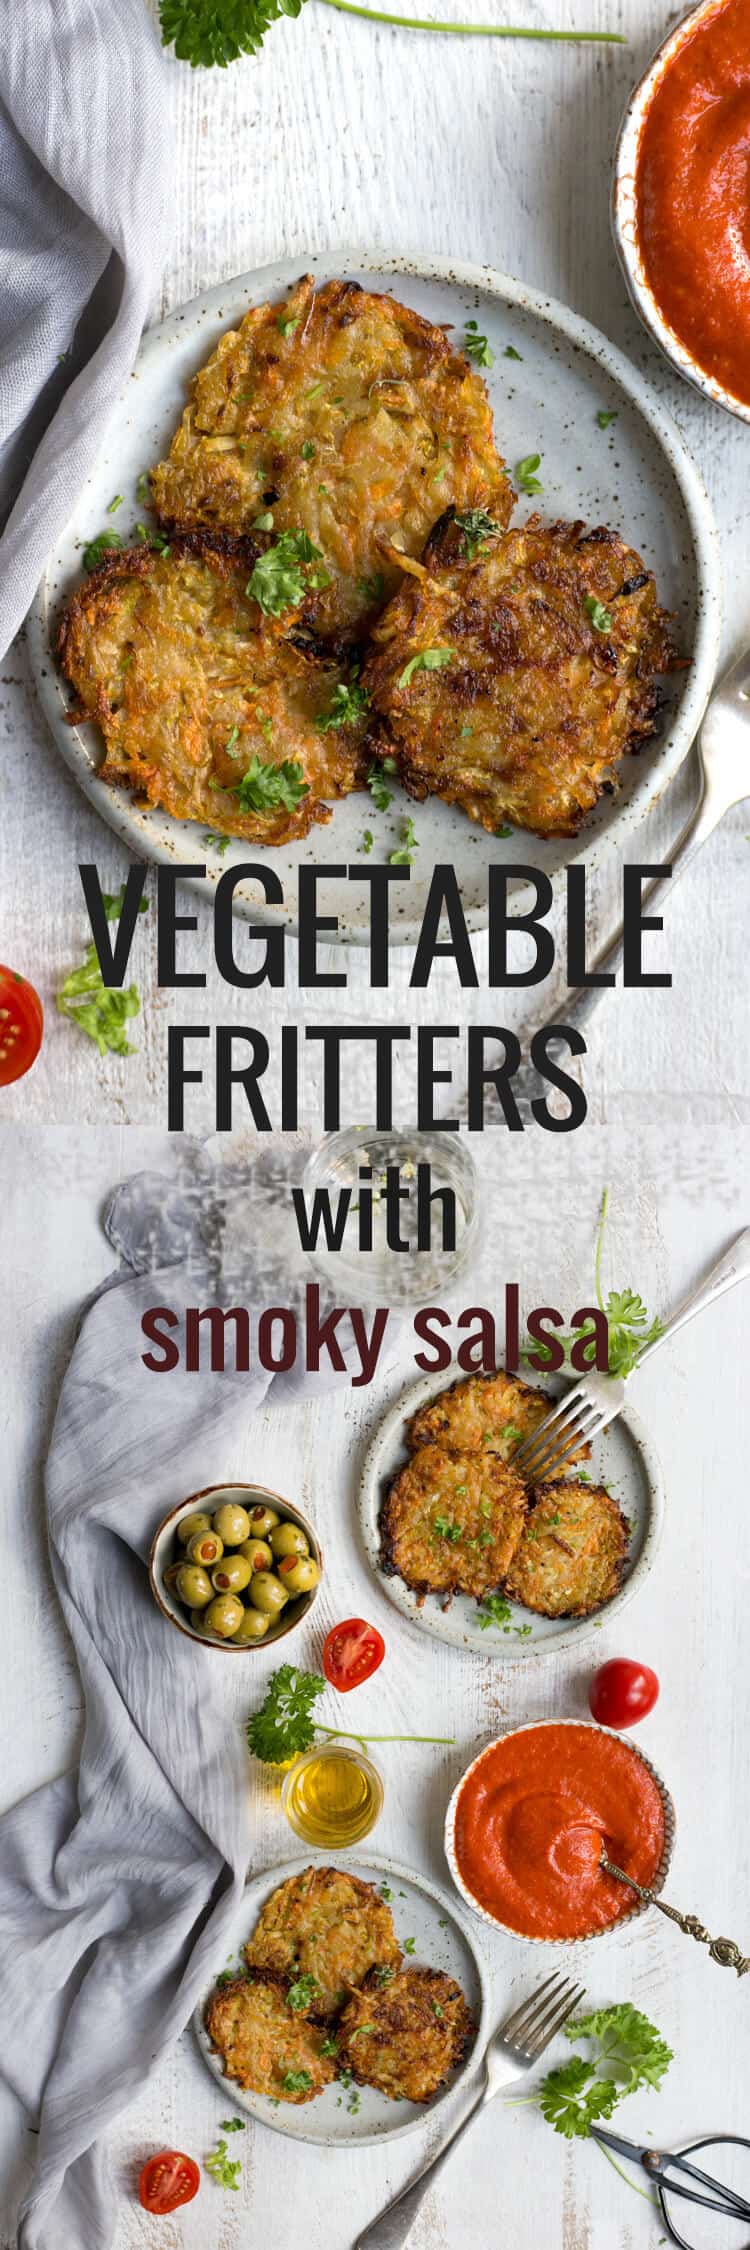 Vegetable fritters with smoky tomato salsa | via @annabanana.co